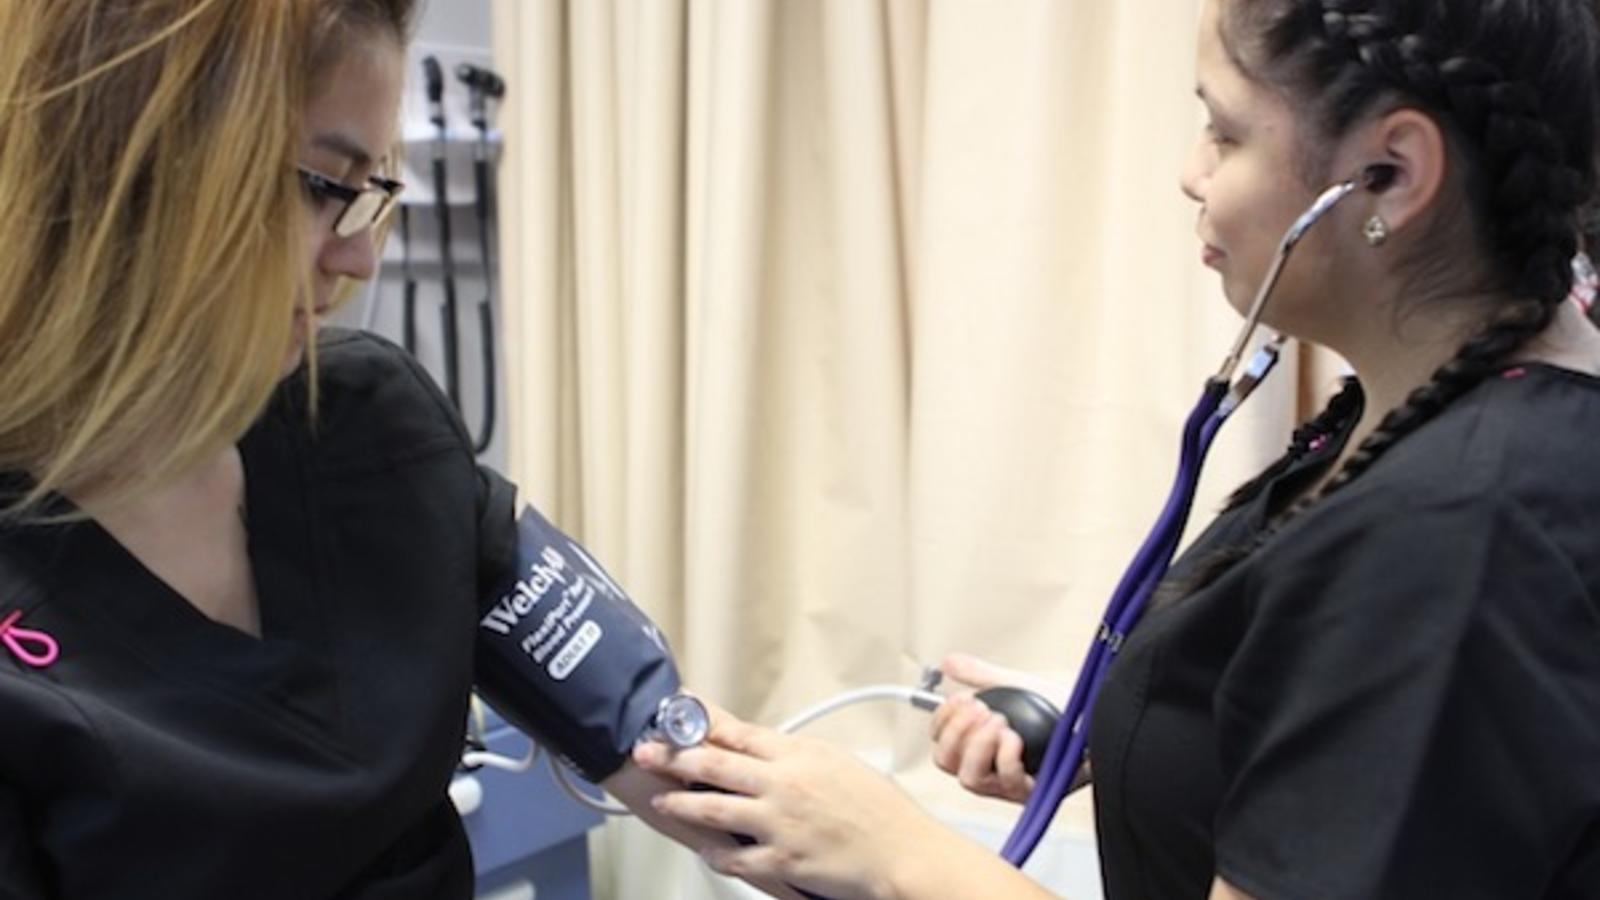 Melrose Park Medical Assistant Taking Blood Pressure Readings